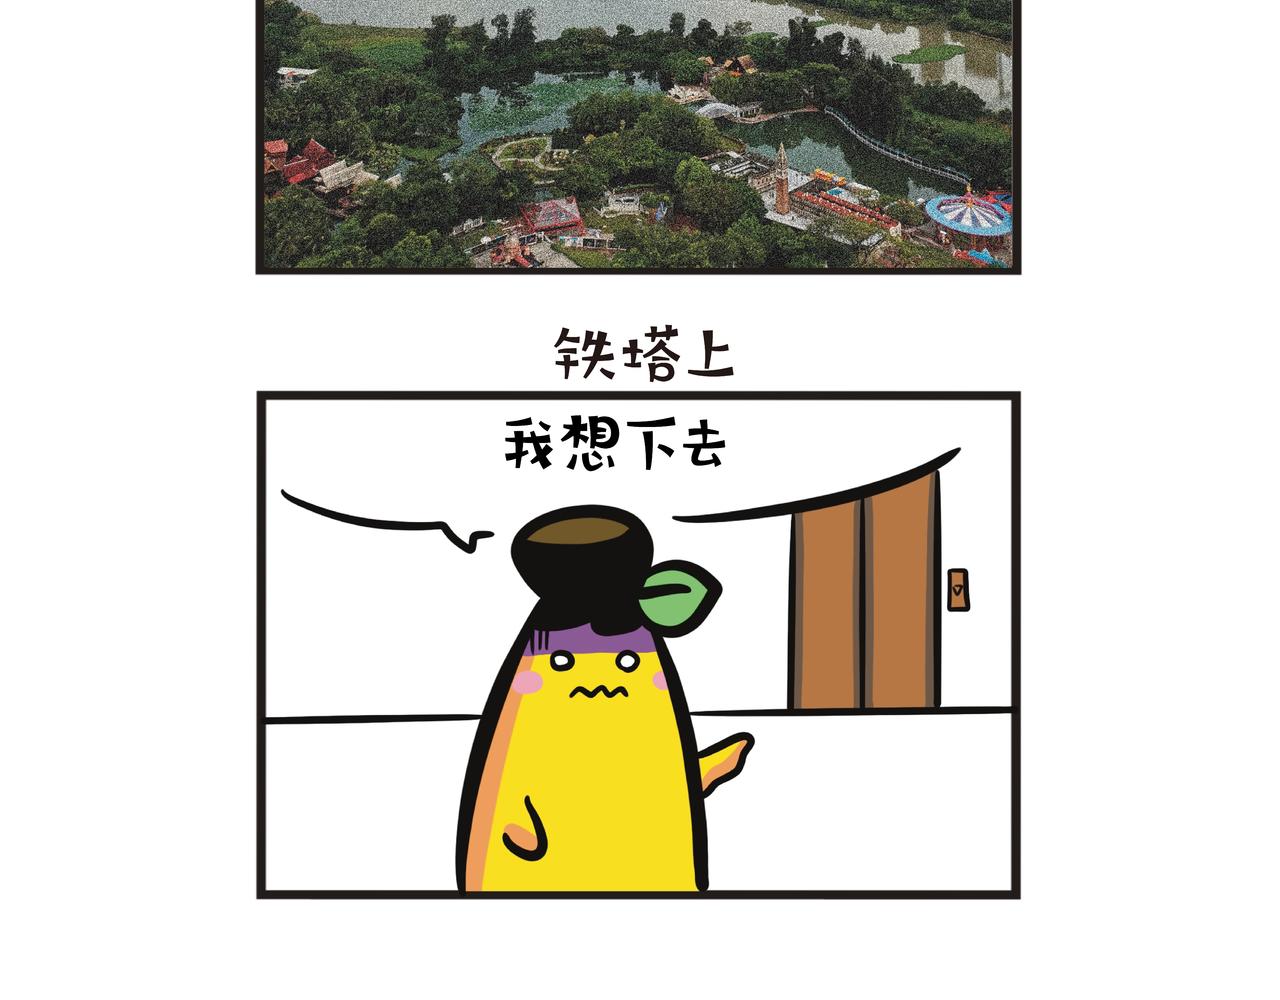 蕉爺日記：一家四蕉 - 深圳世界之窗 - 2